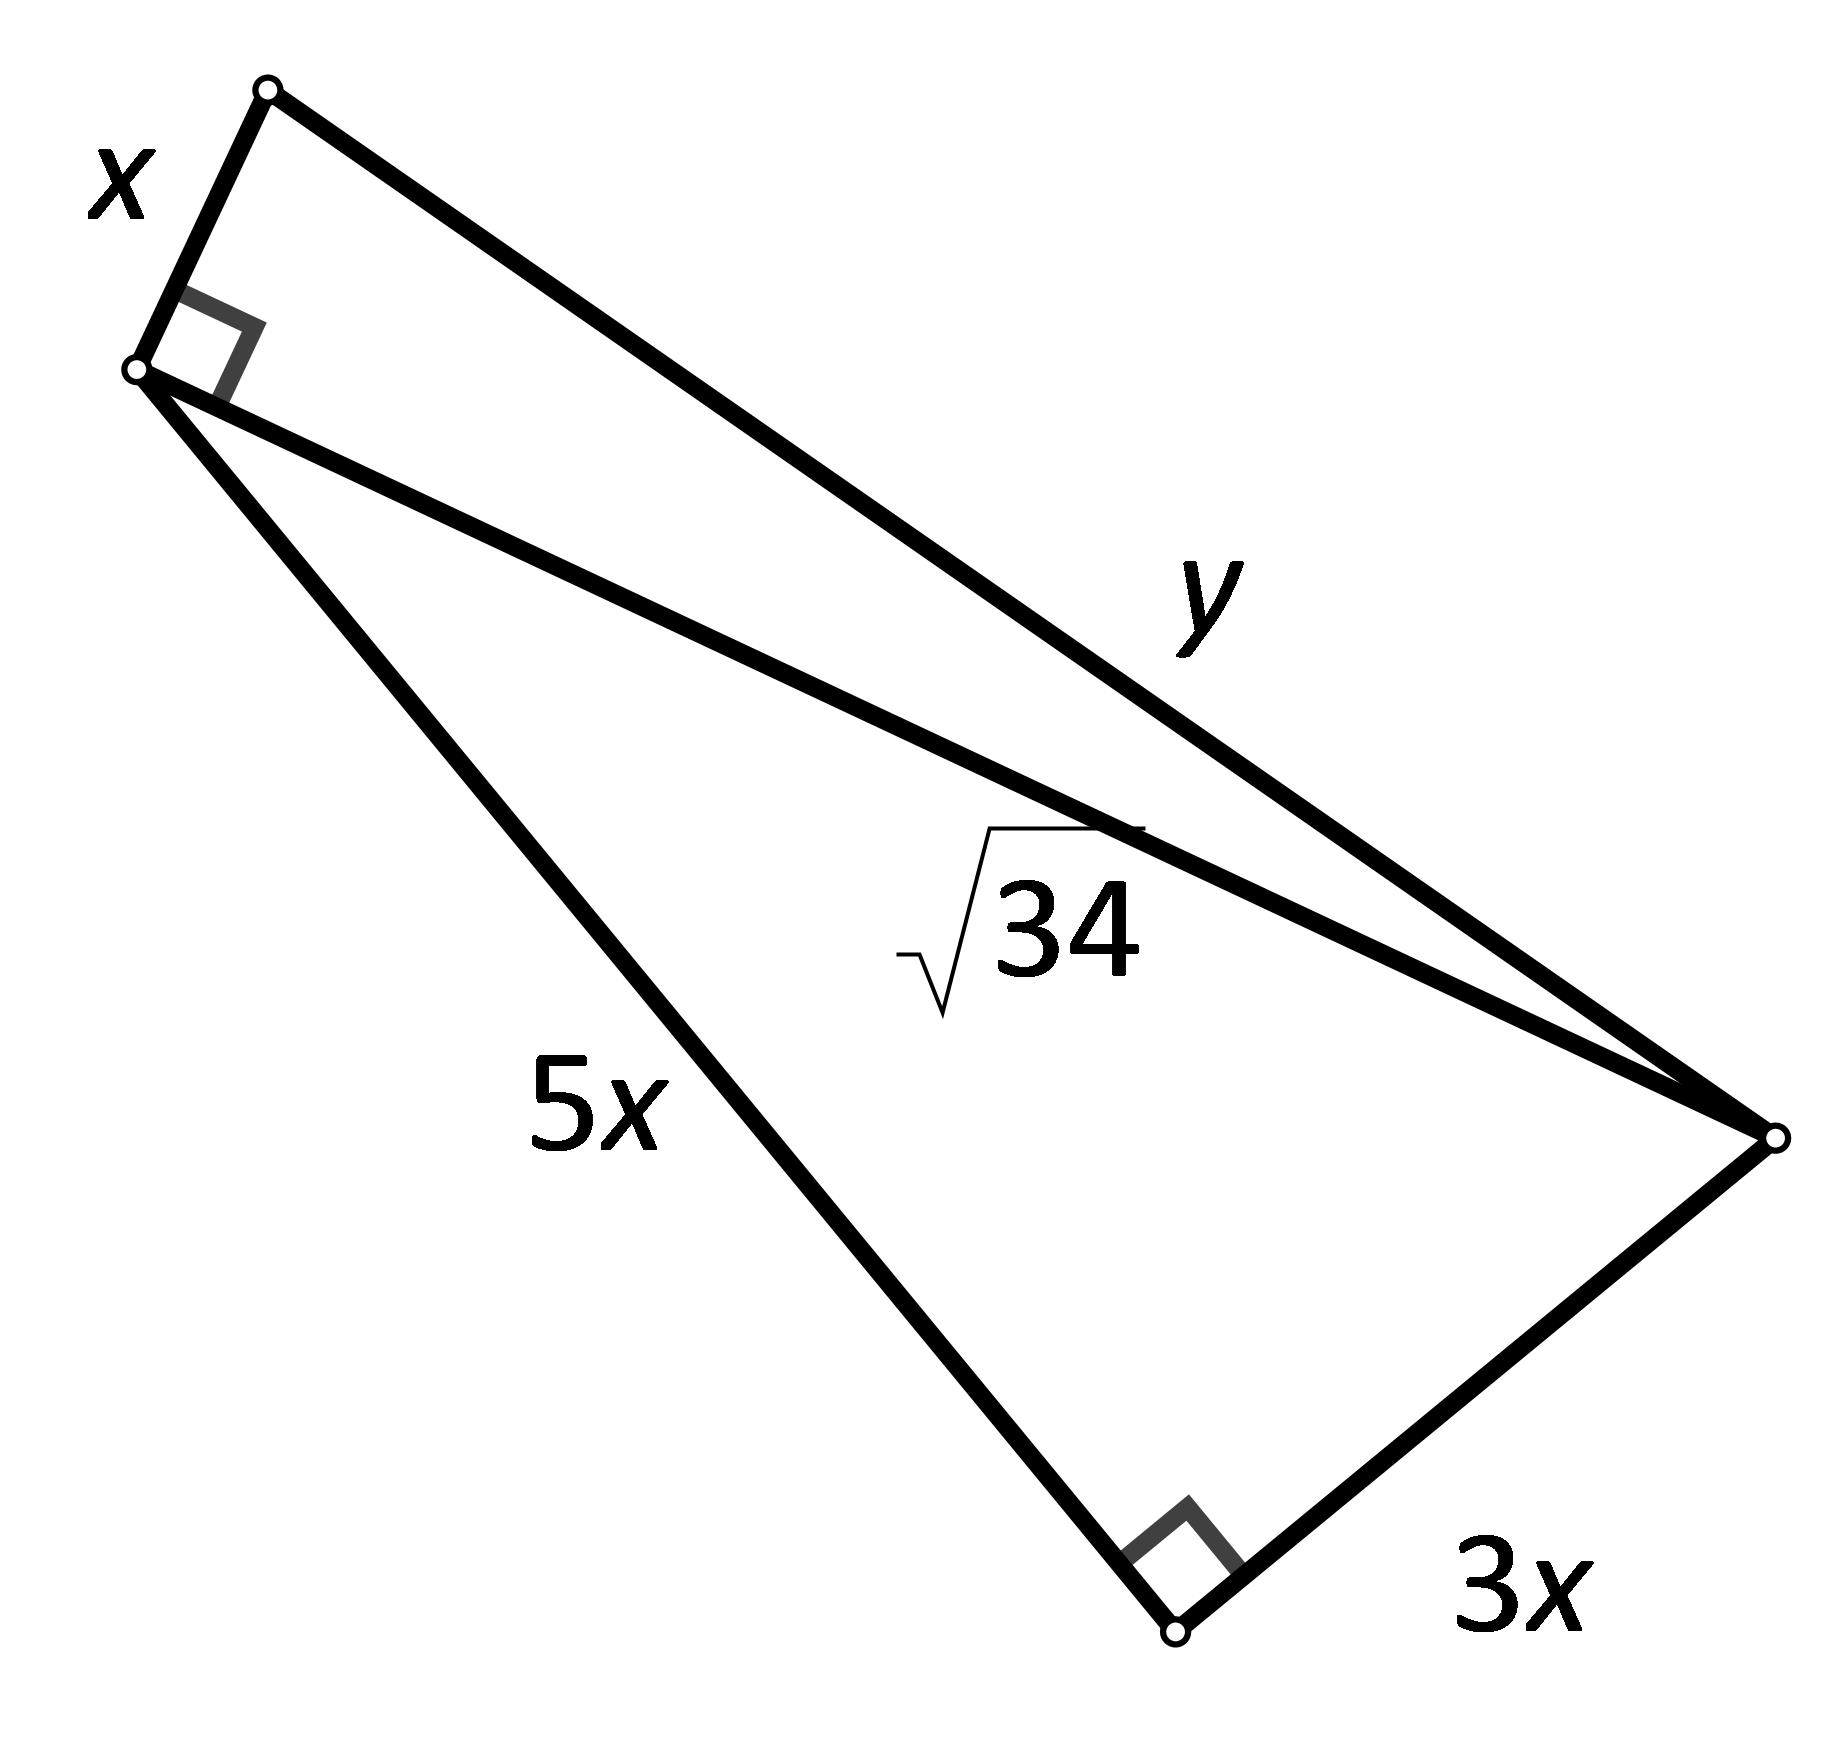 Slika prikazuje pravokutan trokut s nacrtanim pravokutnim trokutom nad njegovom hipotenuzom